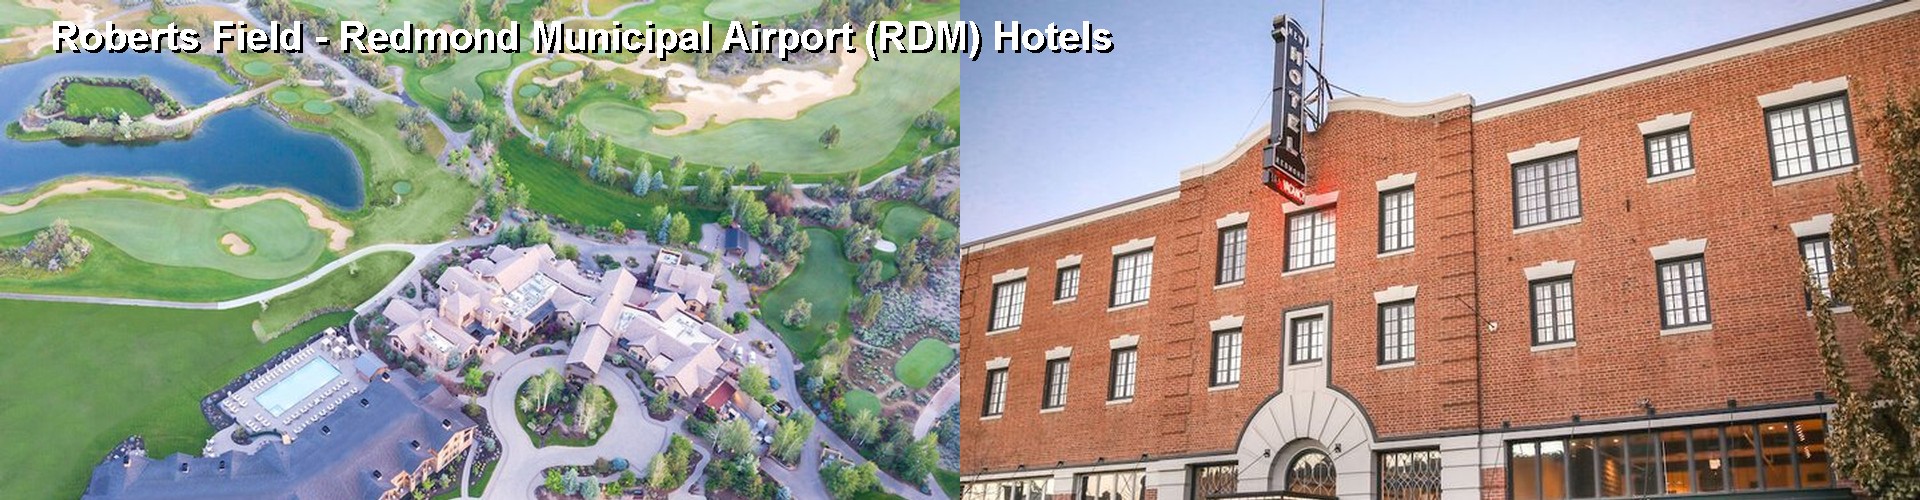 4 Best Hotels near Roberts Field - Redmond Municipal Airport (RDM)